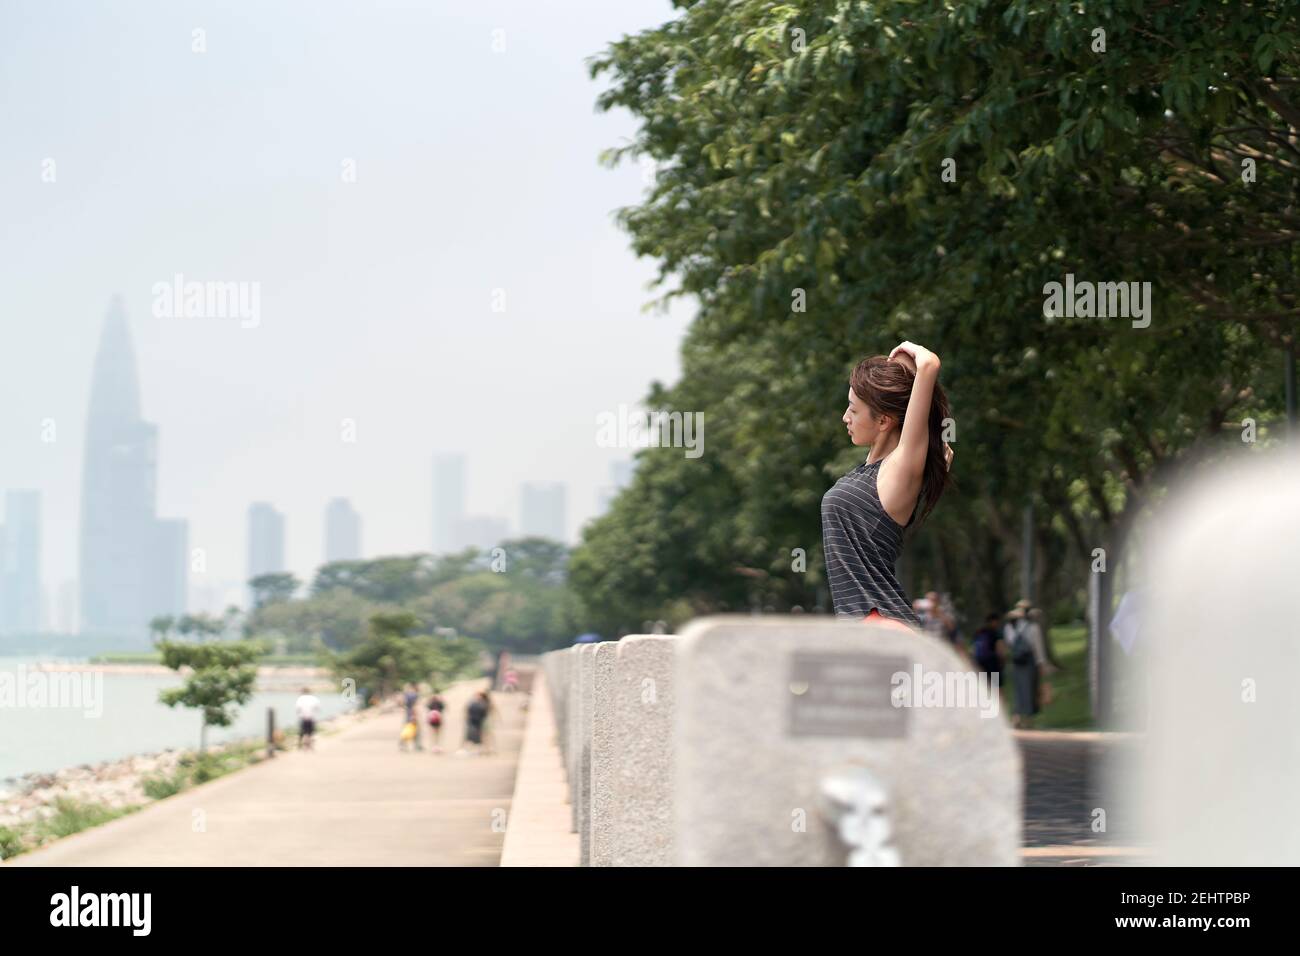 jeune femme asiatique en vêtements de sport s'échauffe avant de faire de l'exercice en plein air dans un parc en bord de mer Banque D'Images